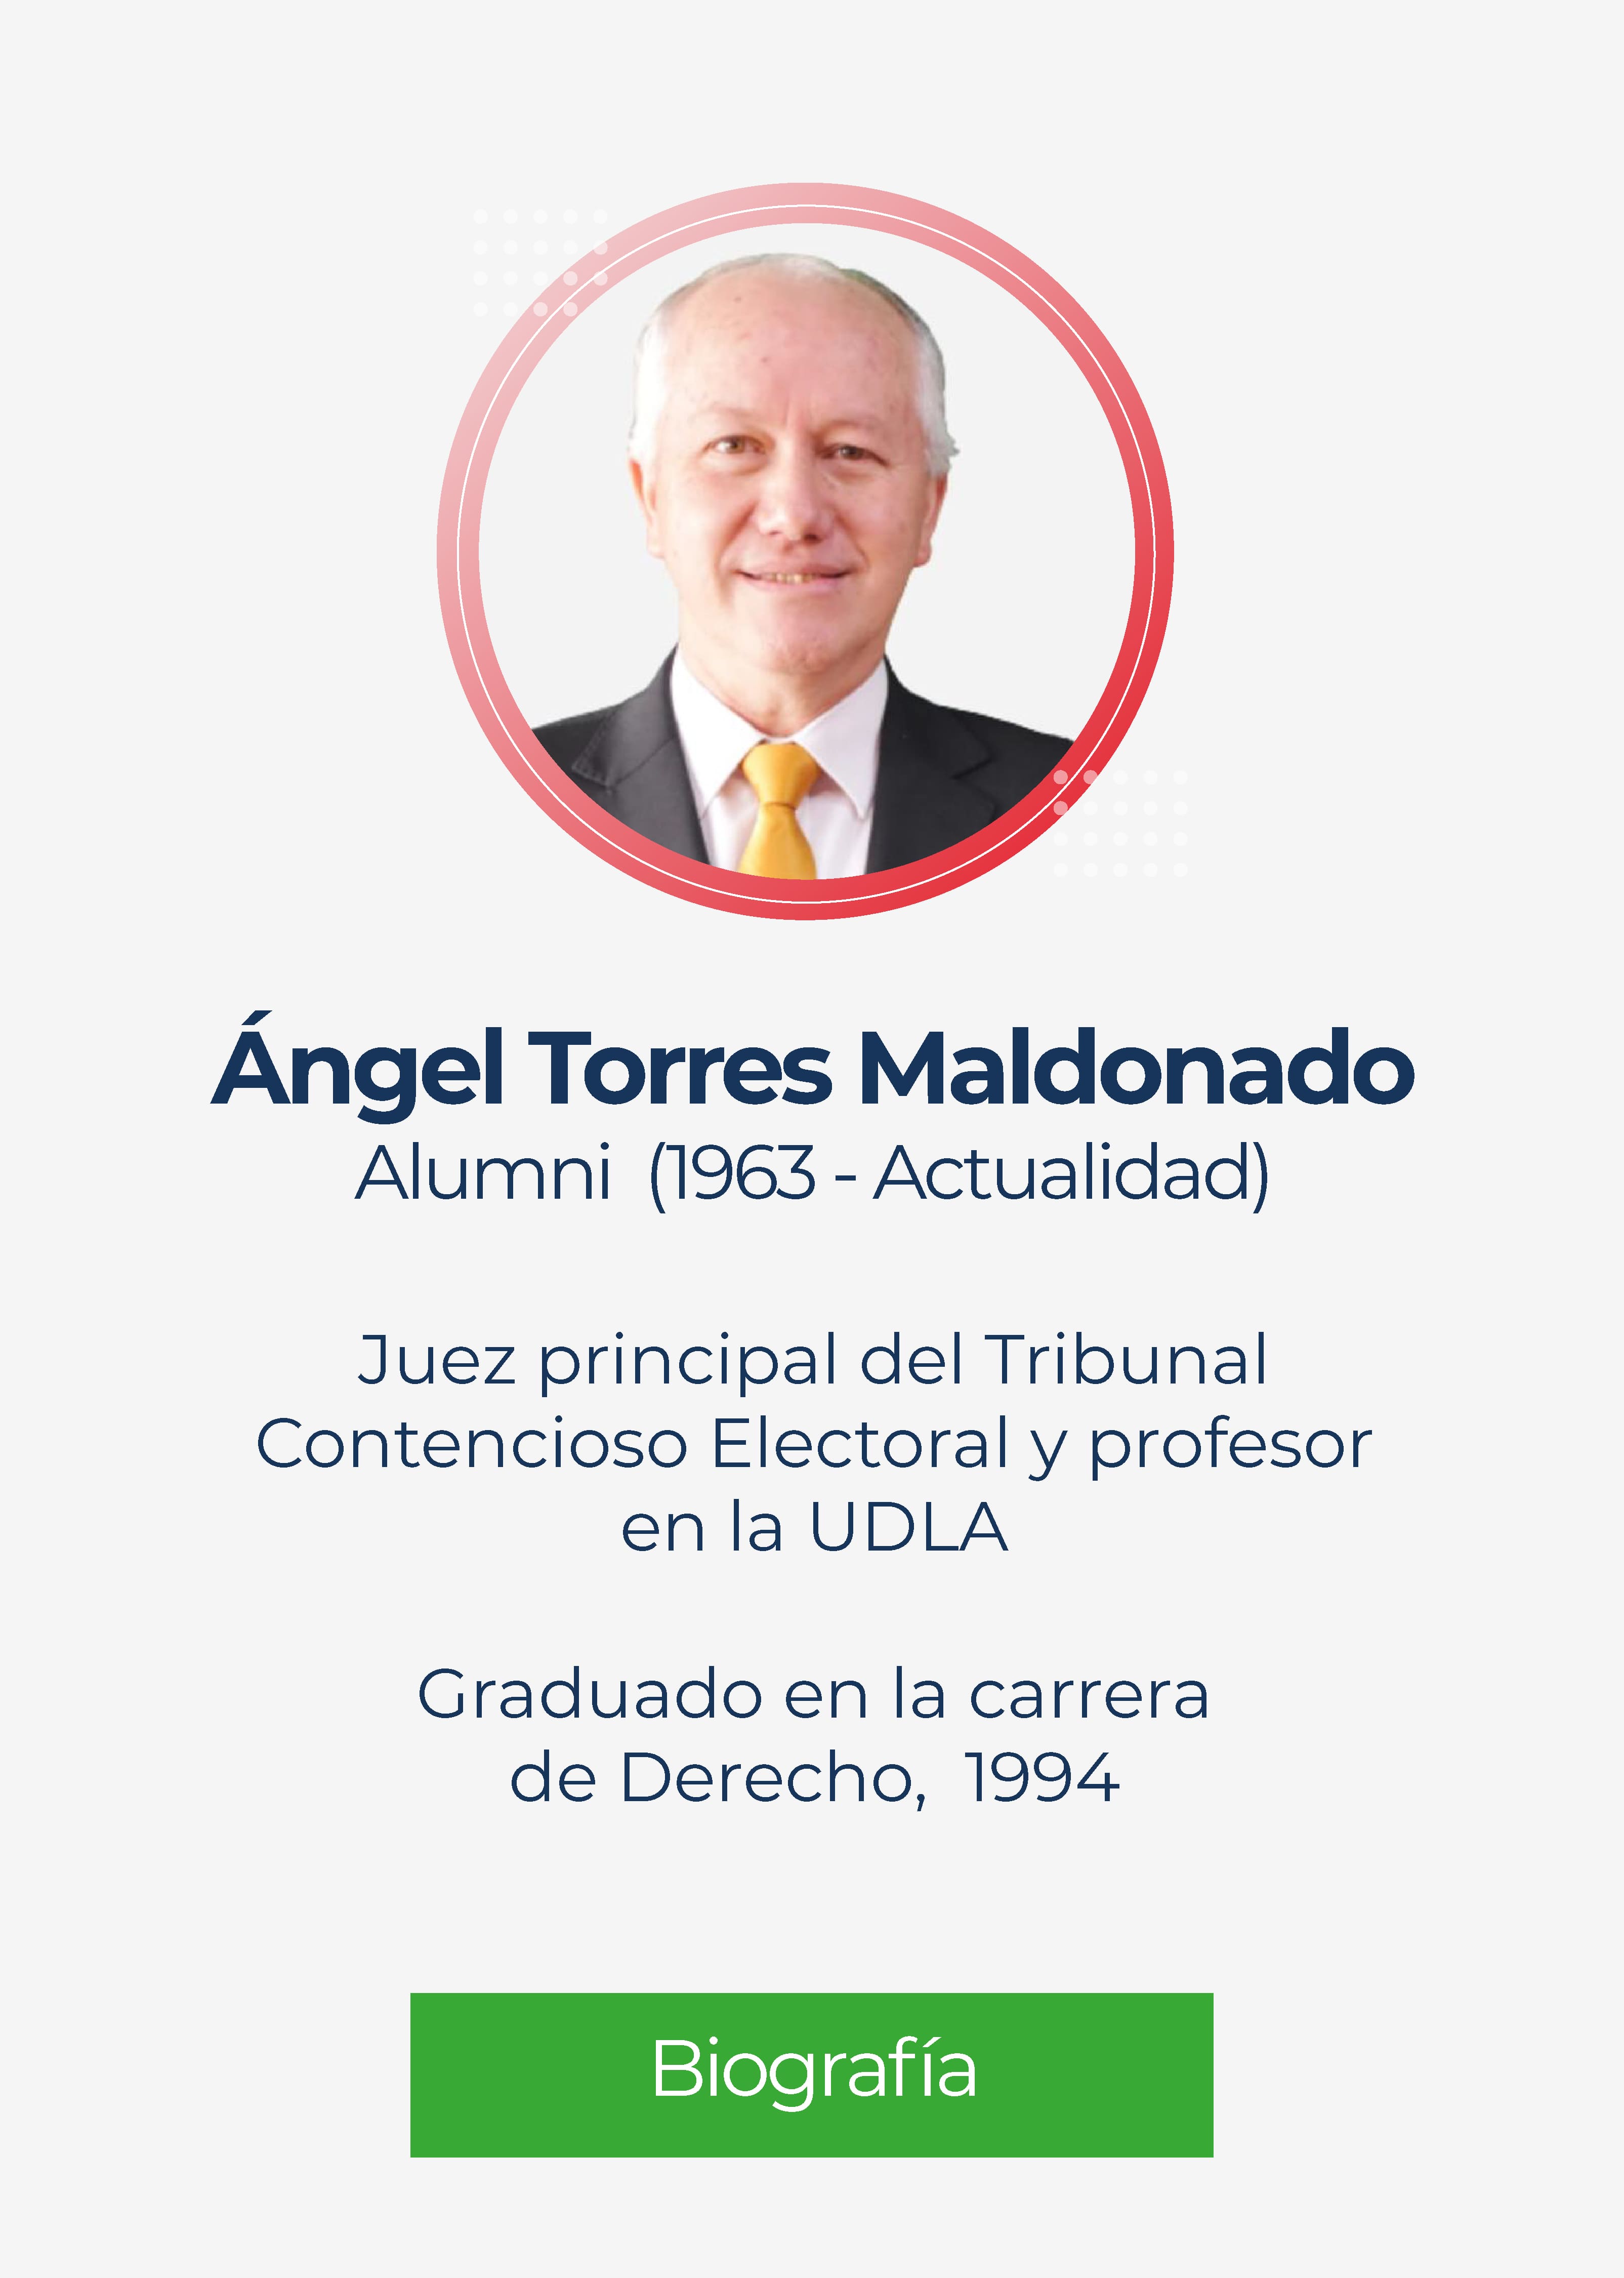 Ángel Eduardo Torres Maldonado